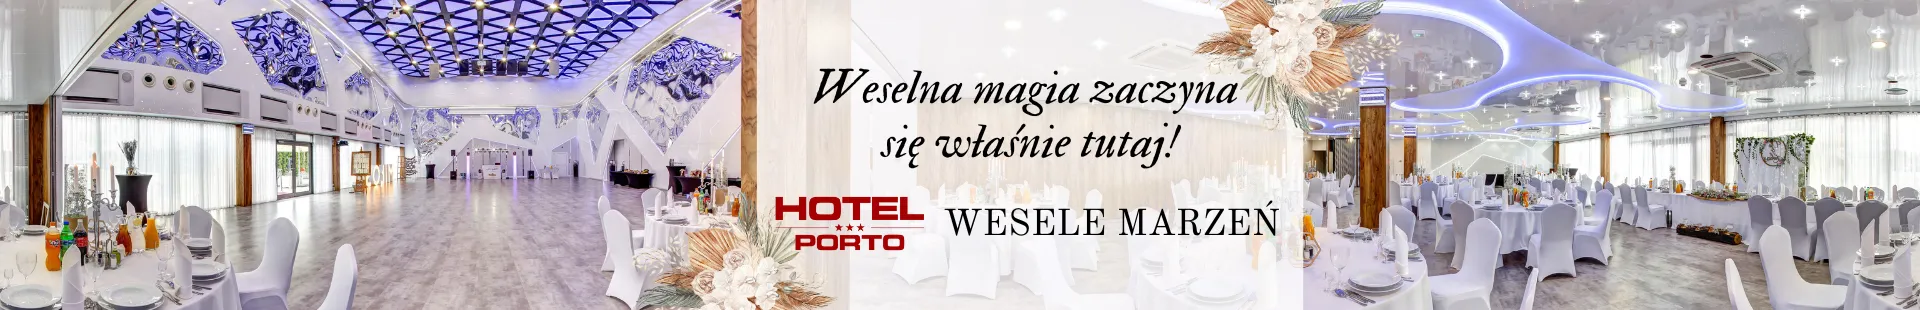 Hotele na wesele wedding.pl